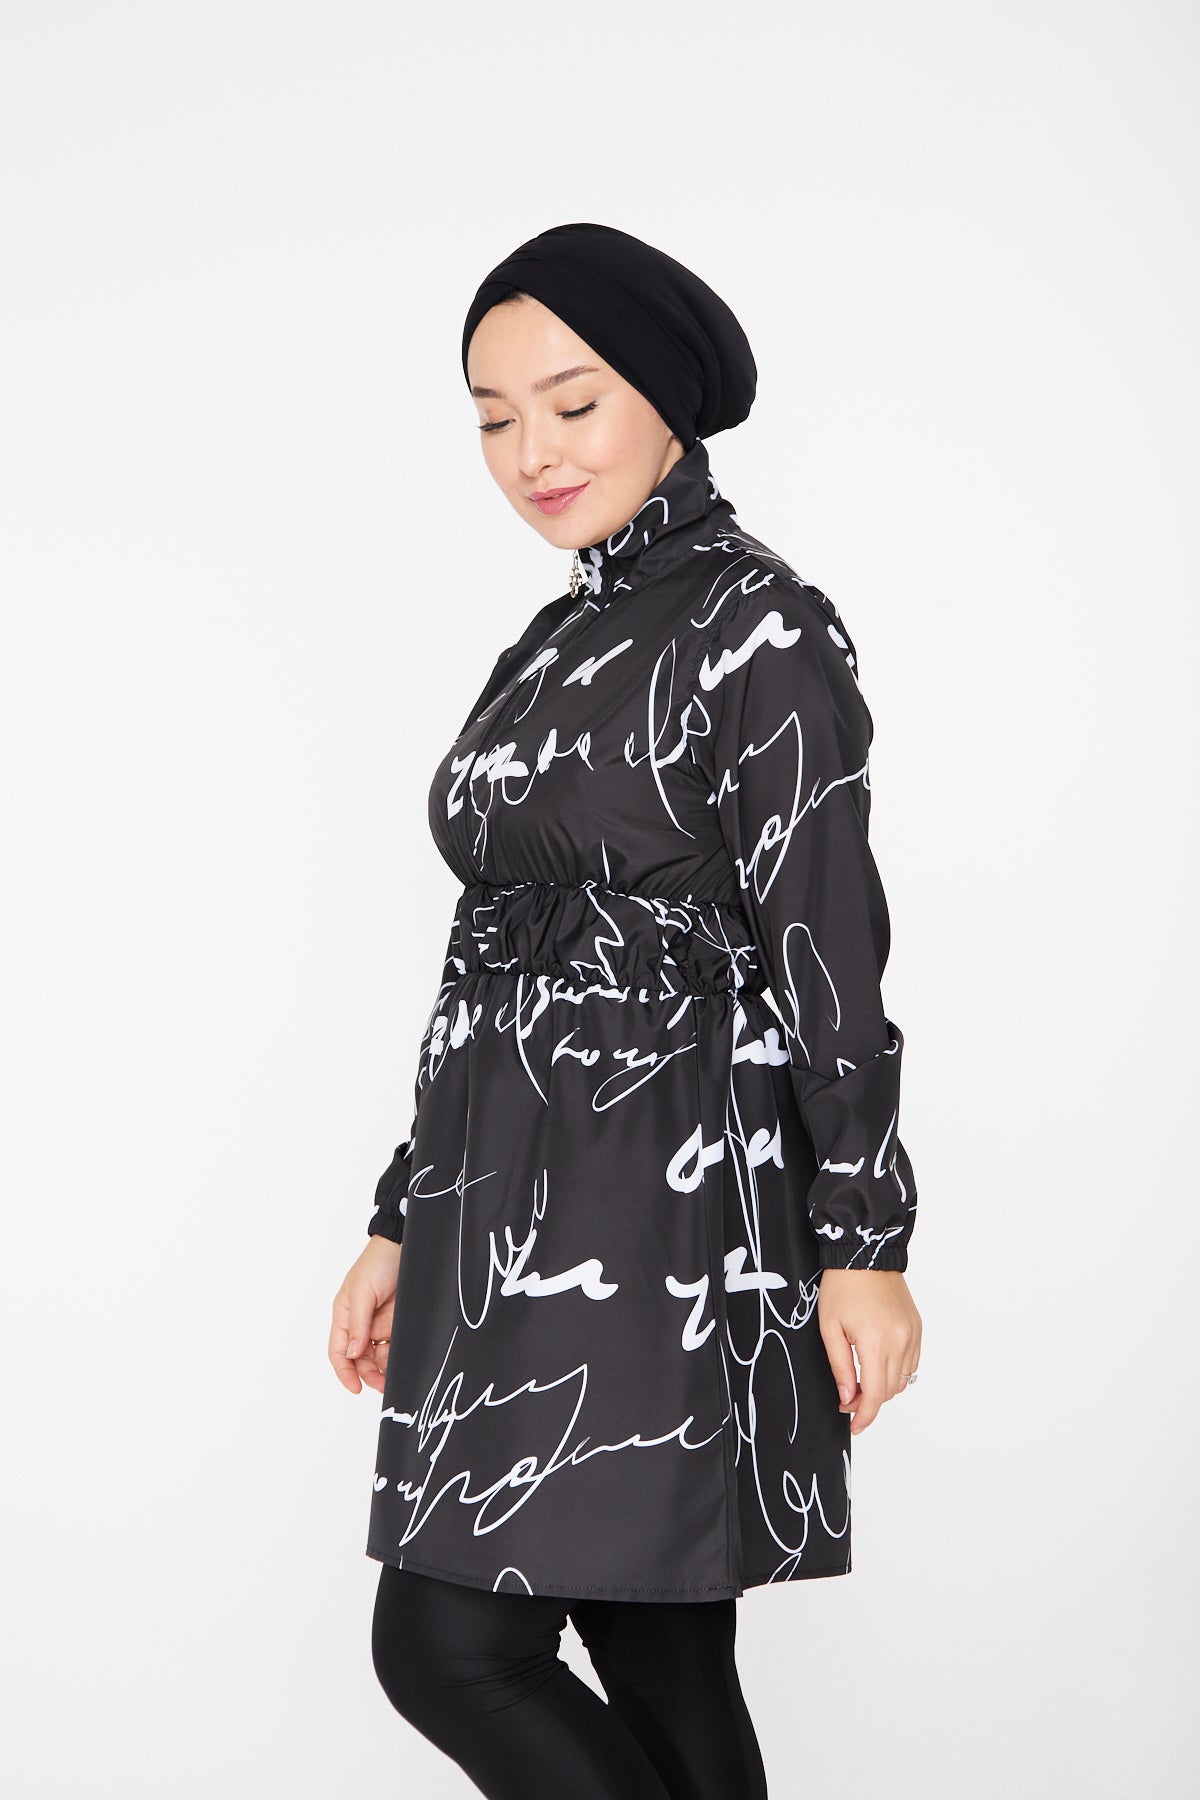 قطعة واحدة من ملابس السباحة ذات الياقة المدورة للحجاب